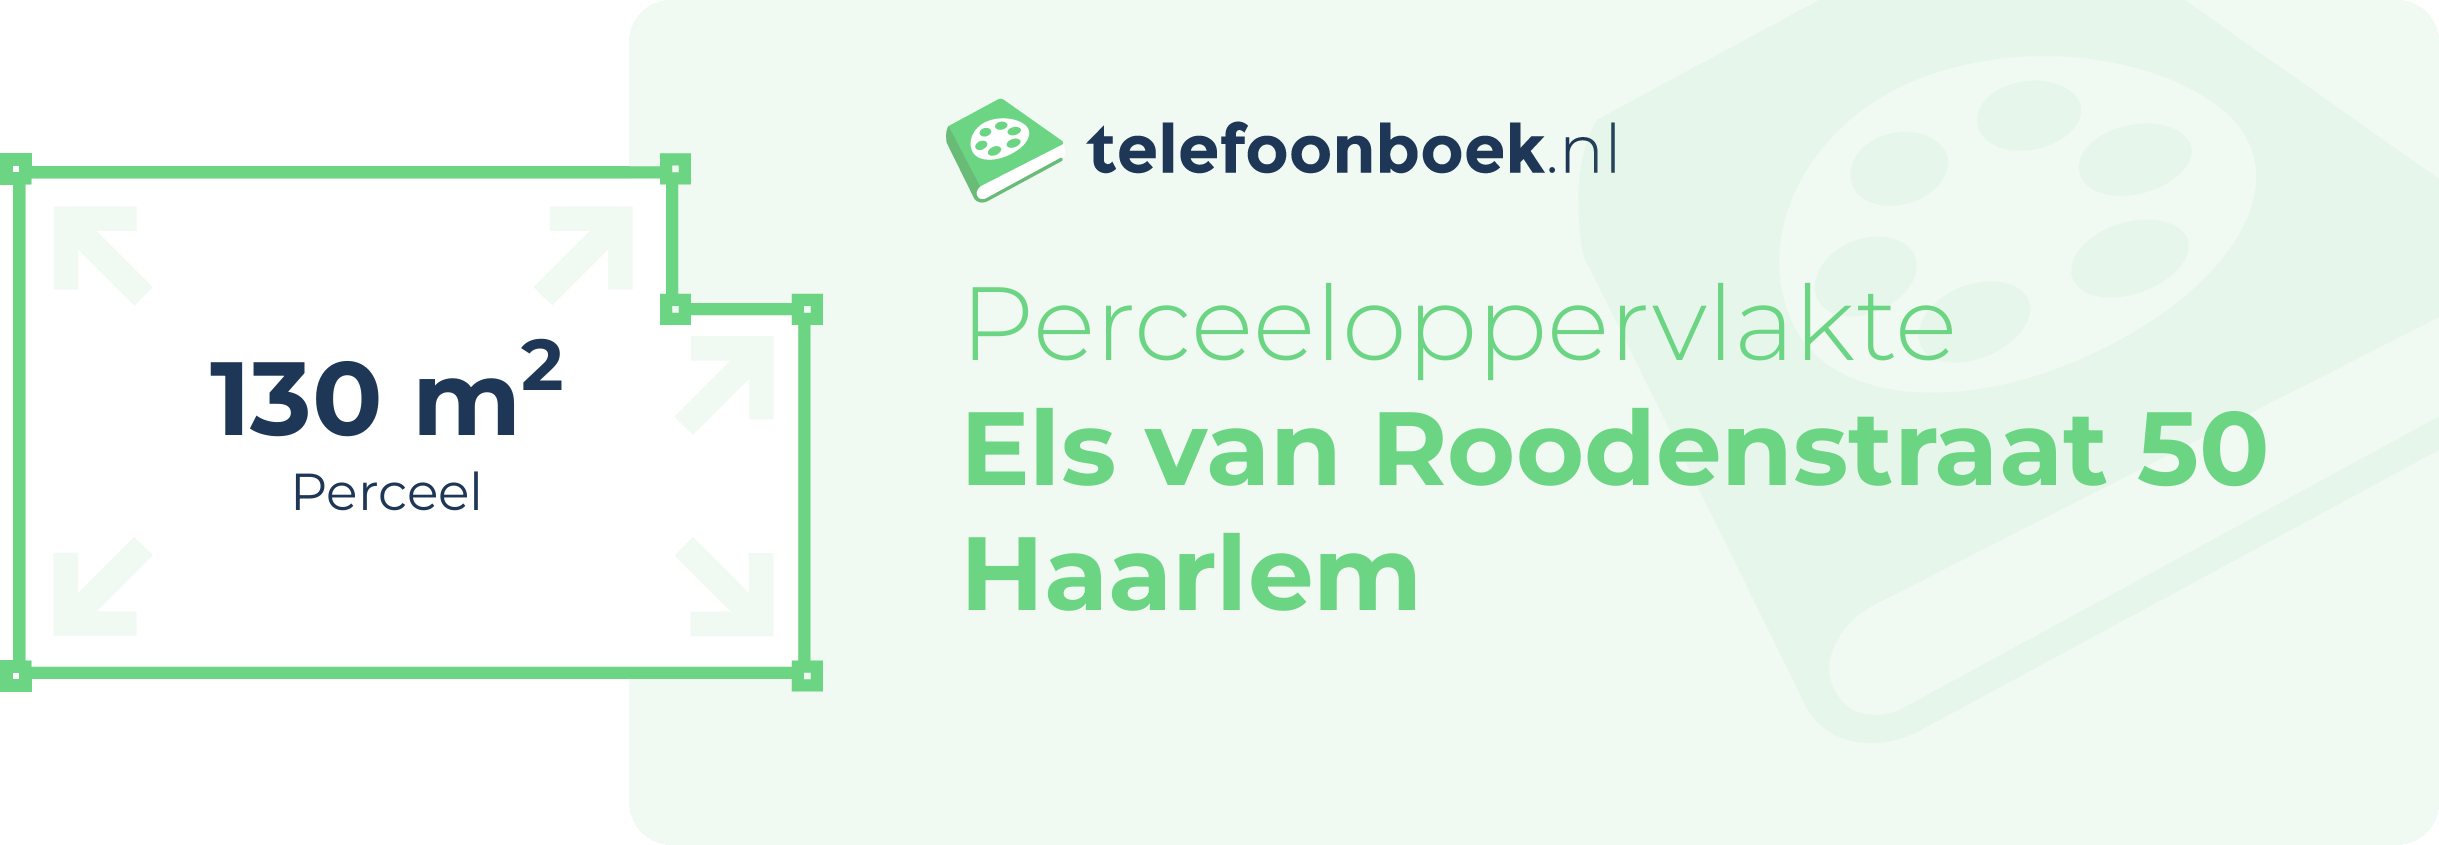 Perceeloppervlakte Els Van Roodenstraat 50 Haarlem